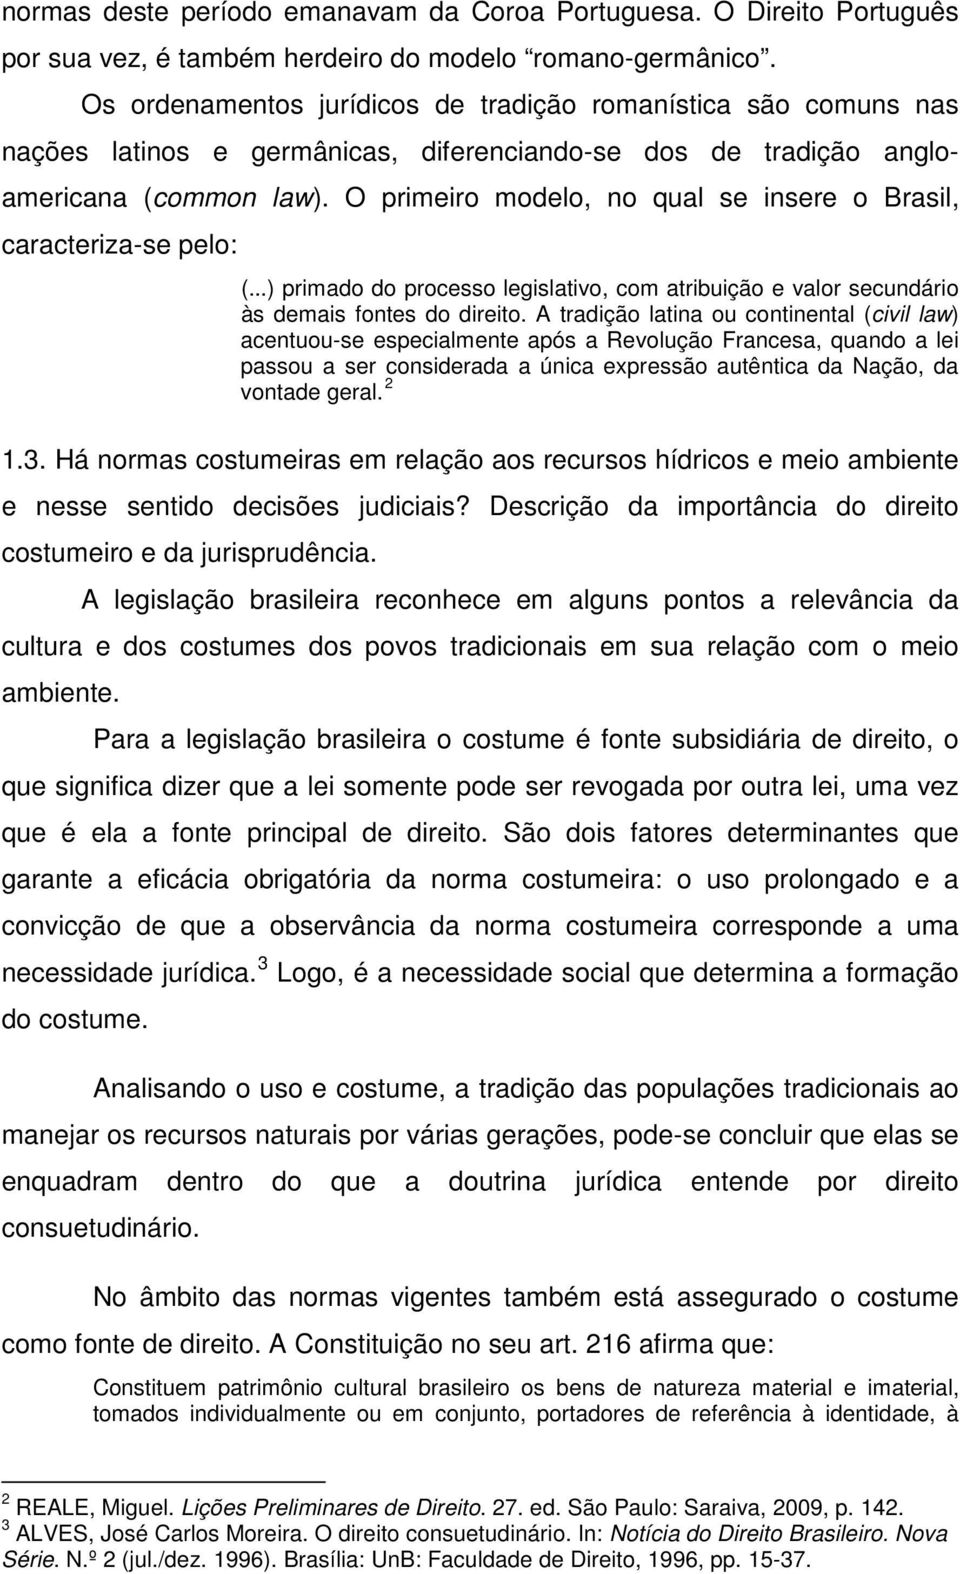 O primeiro modelo, no qual se insere o Brasil, caracteriza-se pelo: (...) primado do processo legislativo, com atribuição e valor secundário às demais fontes do direito.